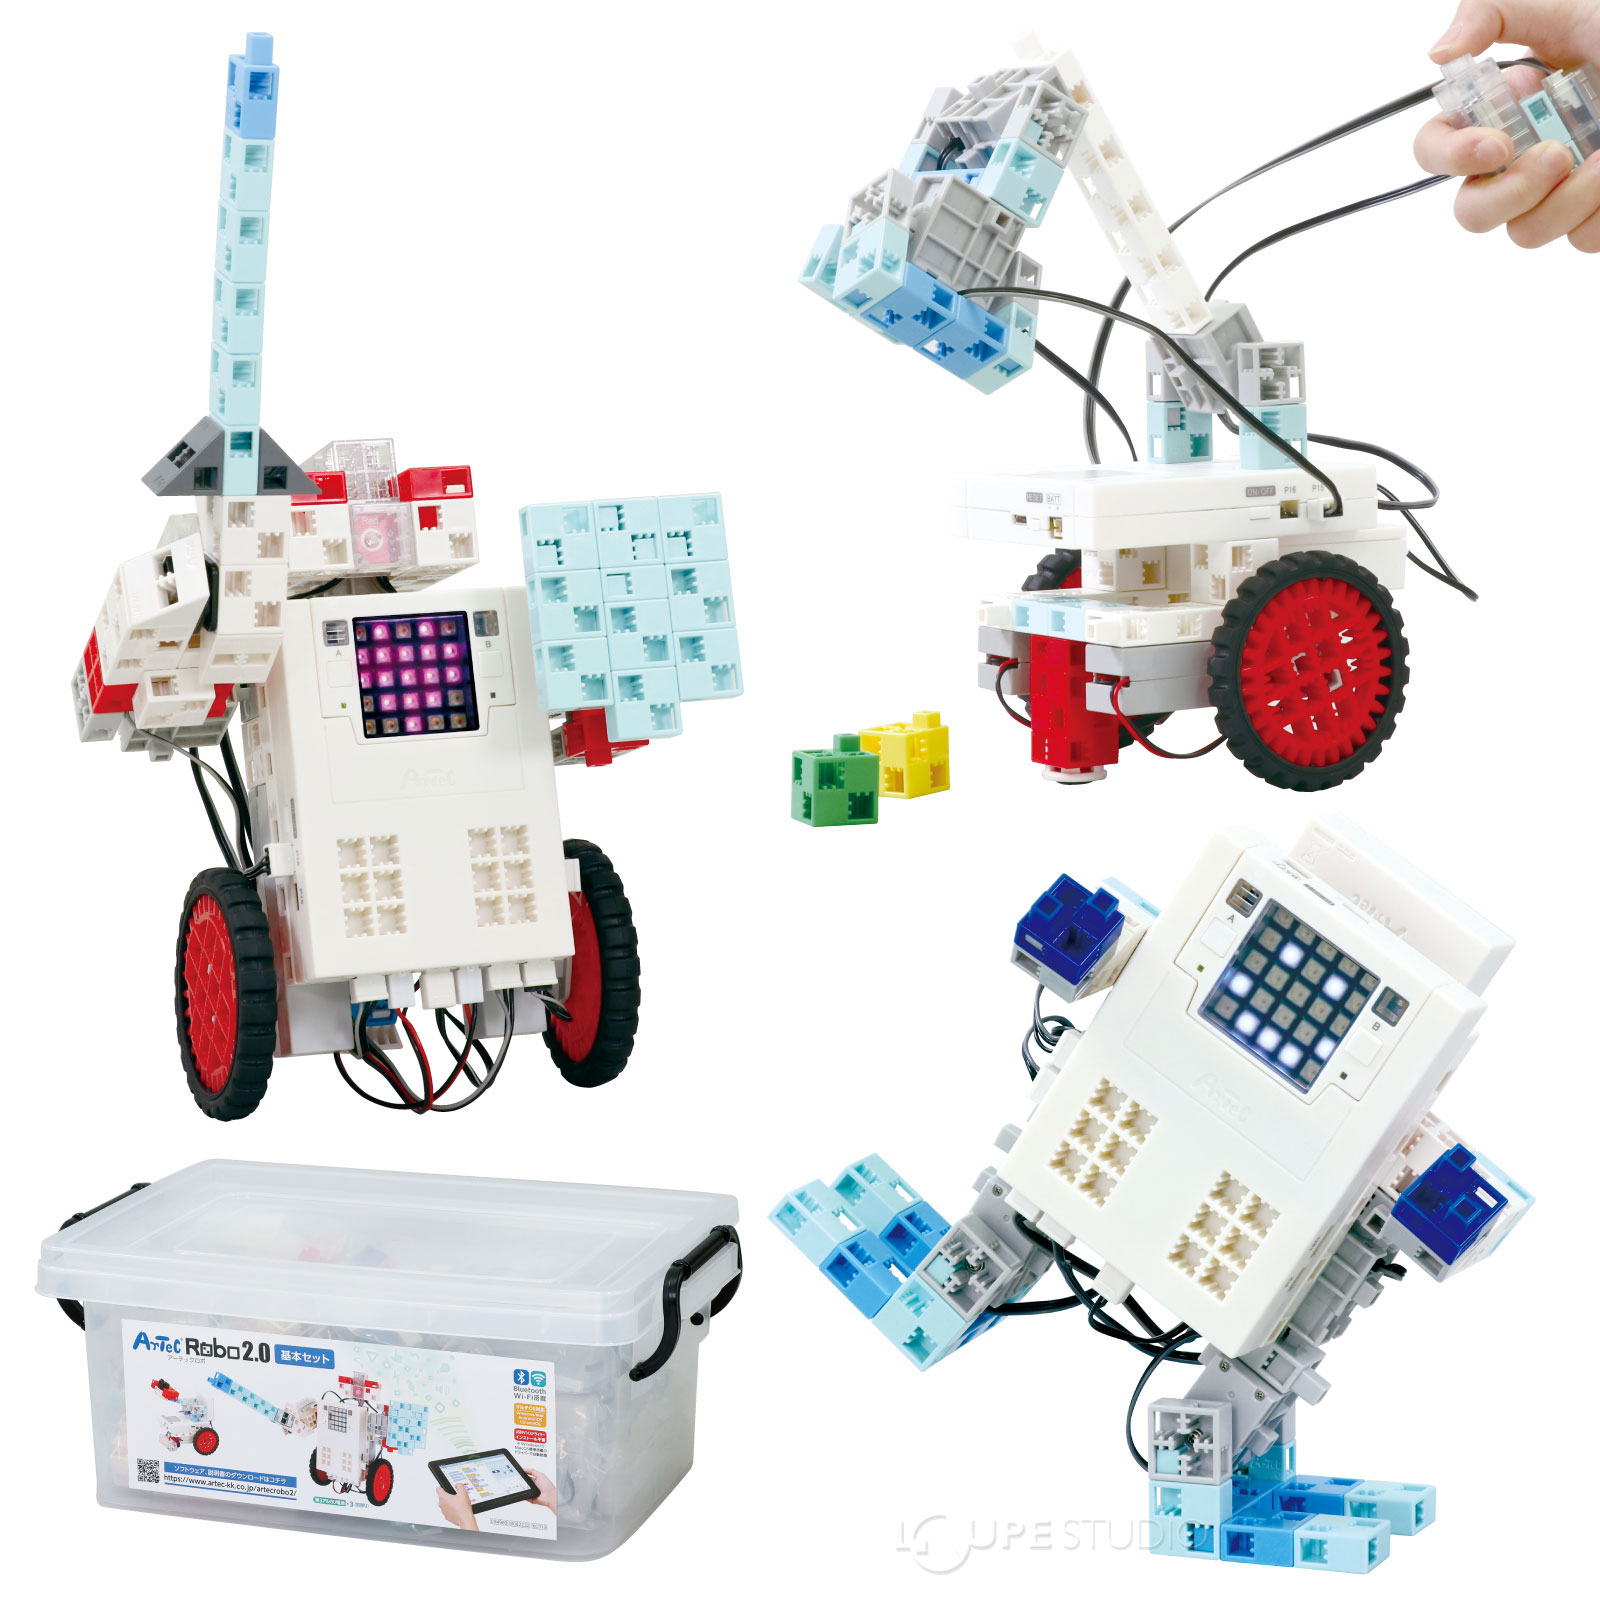 プログラミング ロボット 小学生 中学生 アーテックロボ 2.0 基本セット 学習 教育 初心者 子供 おもちゃ 男の子 女の子 玩具 ゲーム レゴ・レゴブロックのように遊べる 室内 自由研究 キット